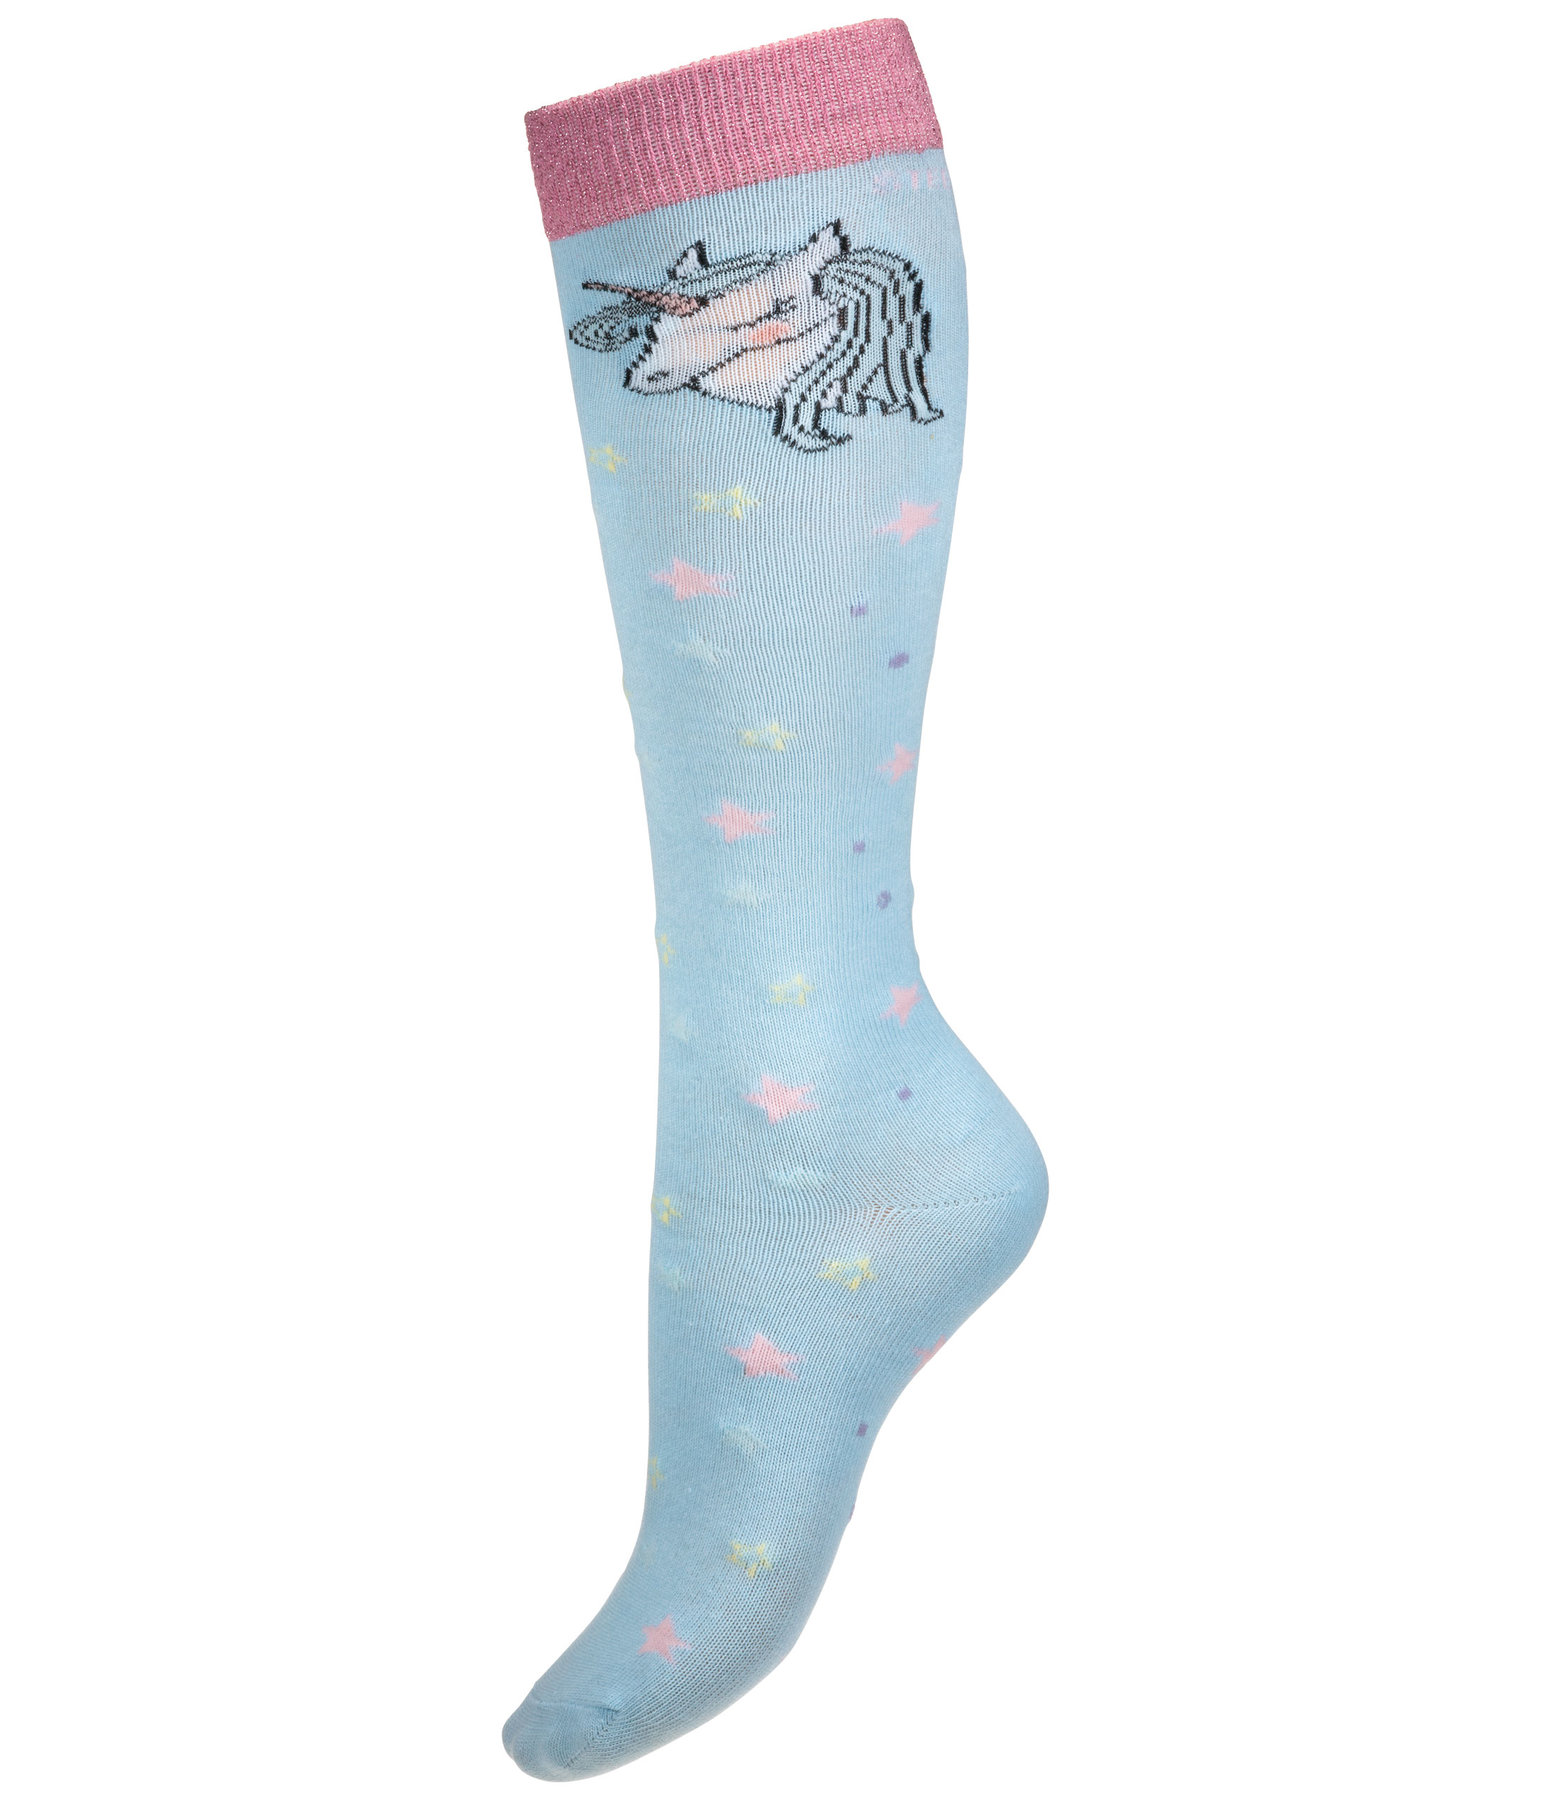 Children's Knee Socks Unicorn